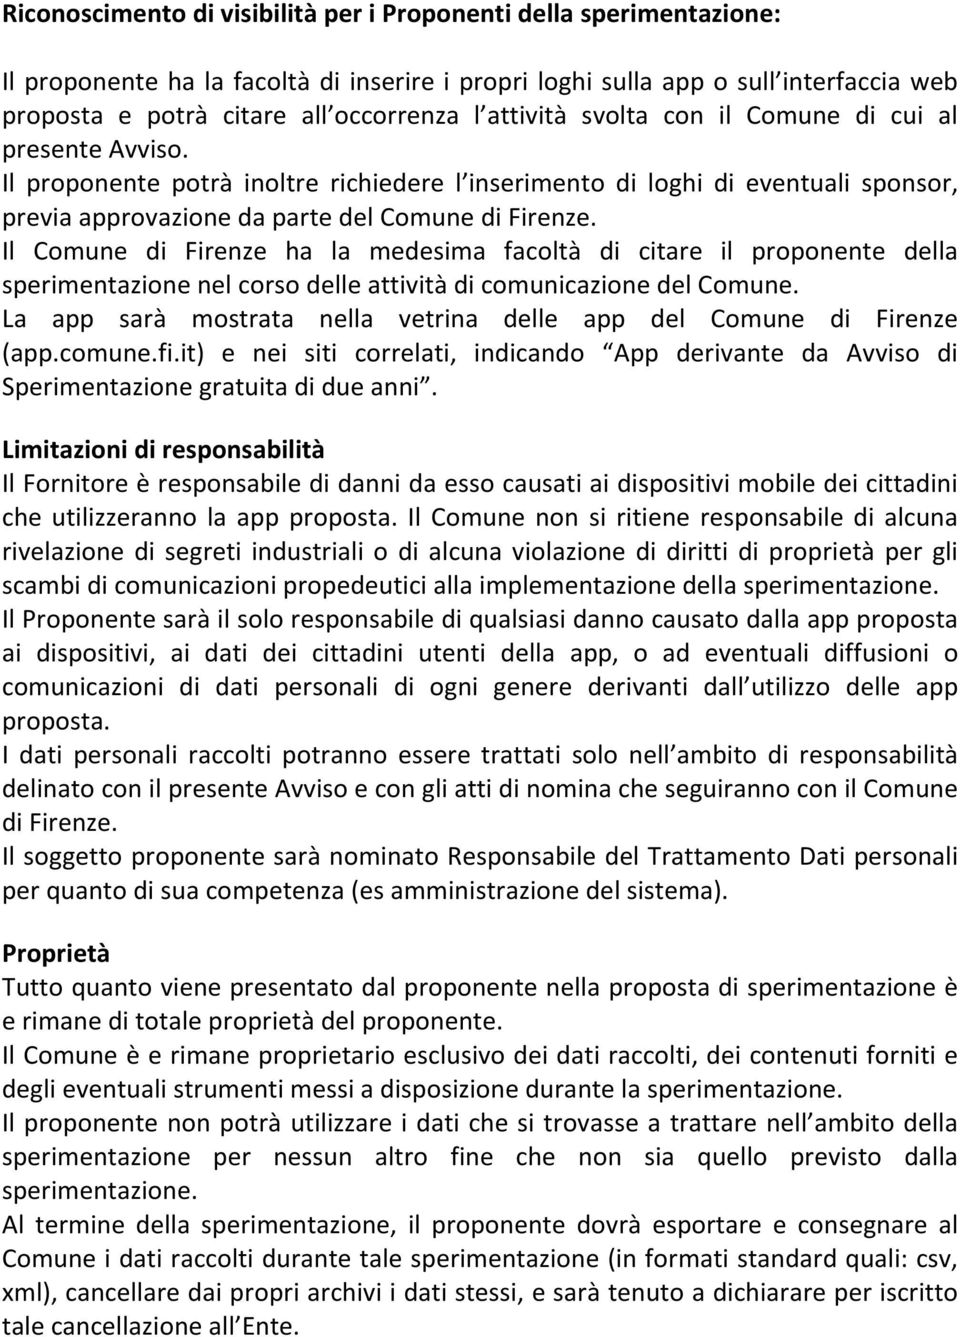 Il Comune di Firenze ha la medesima facoltà di citare il proponente della sperimentazione nel corso delle attività di comunicazione del Comune.